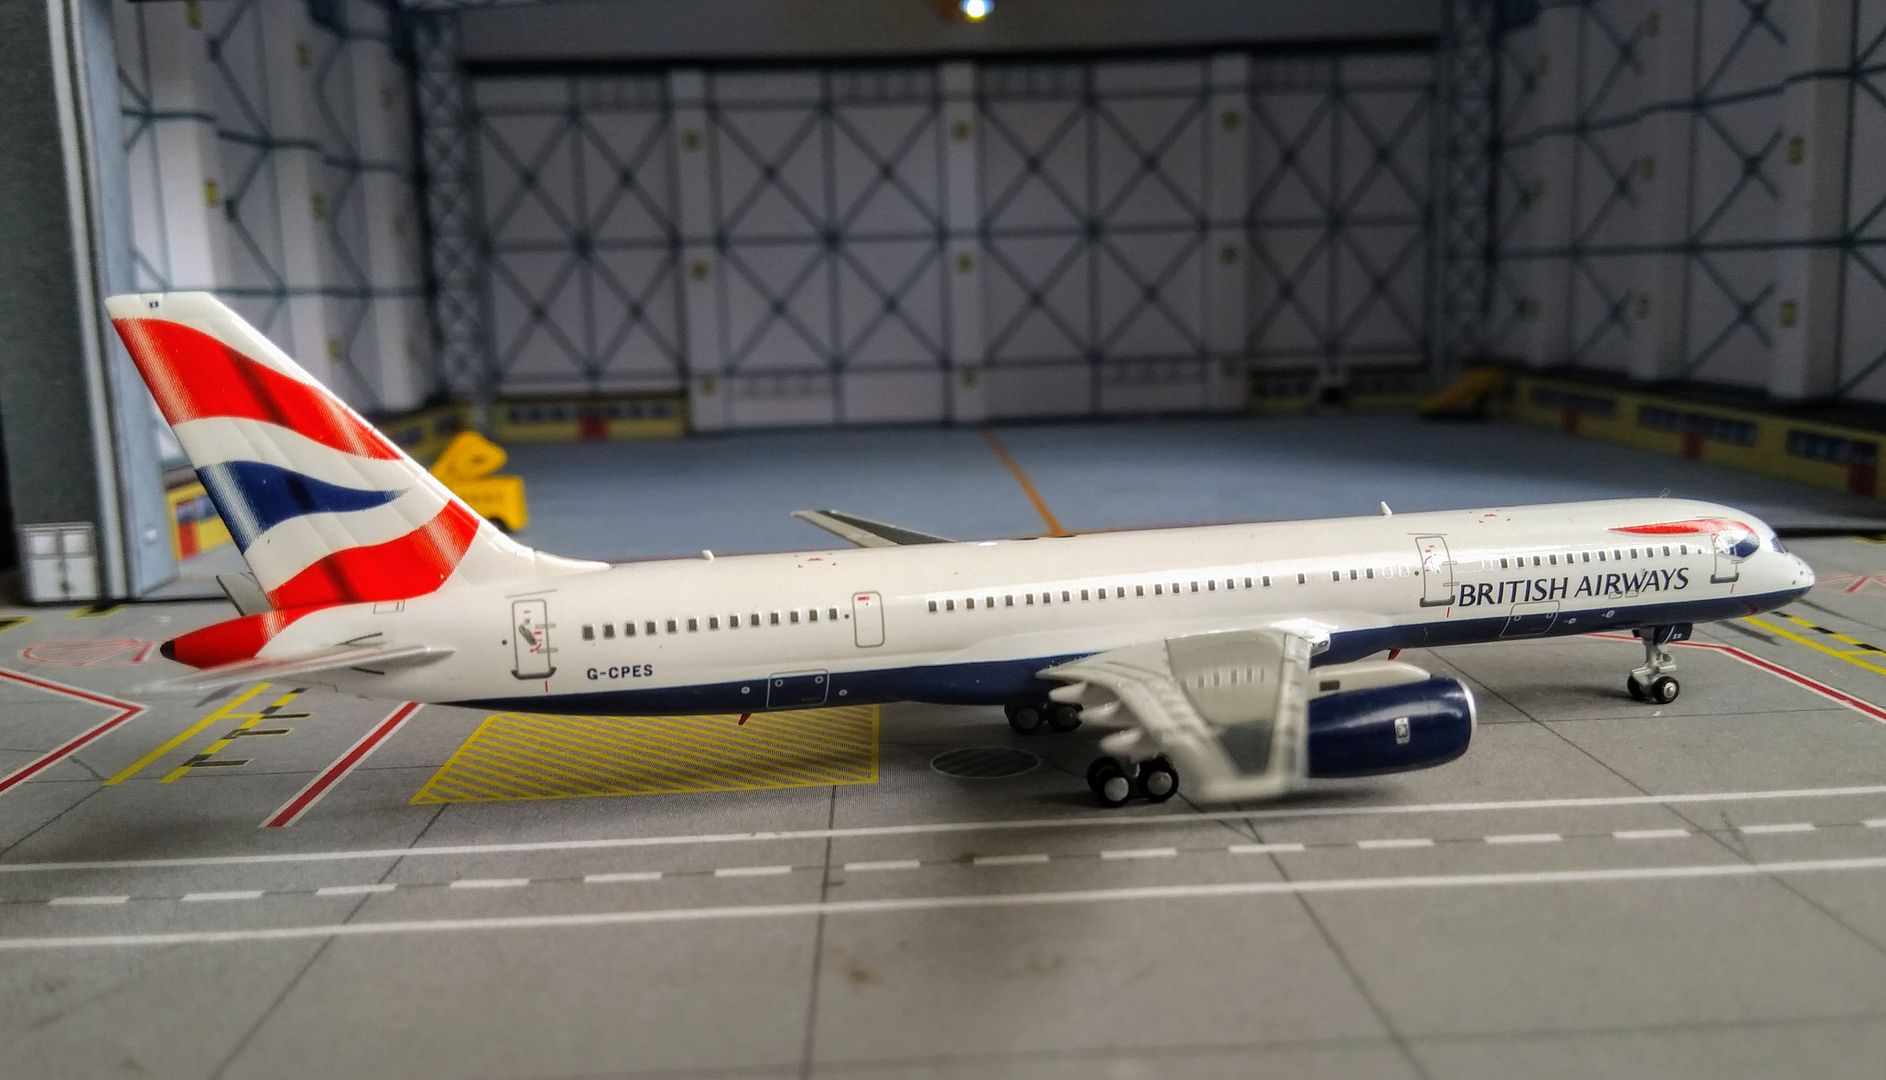 The Blue Peter British Airways 757. - DA.C